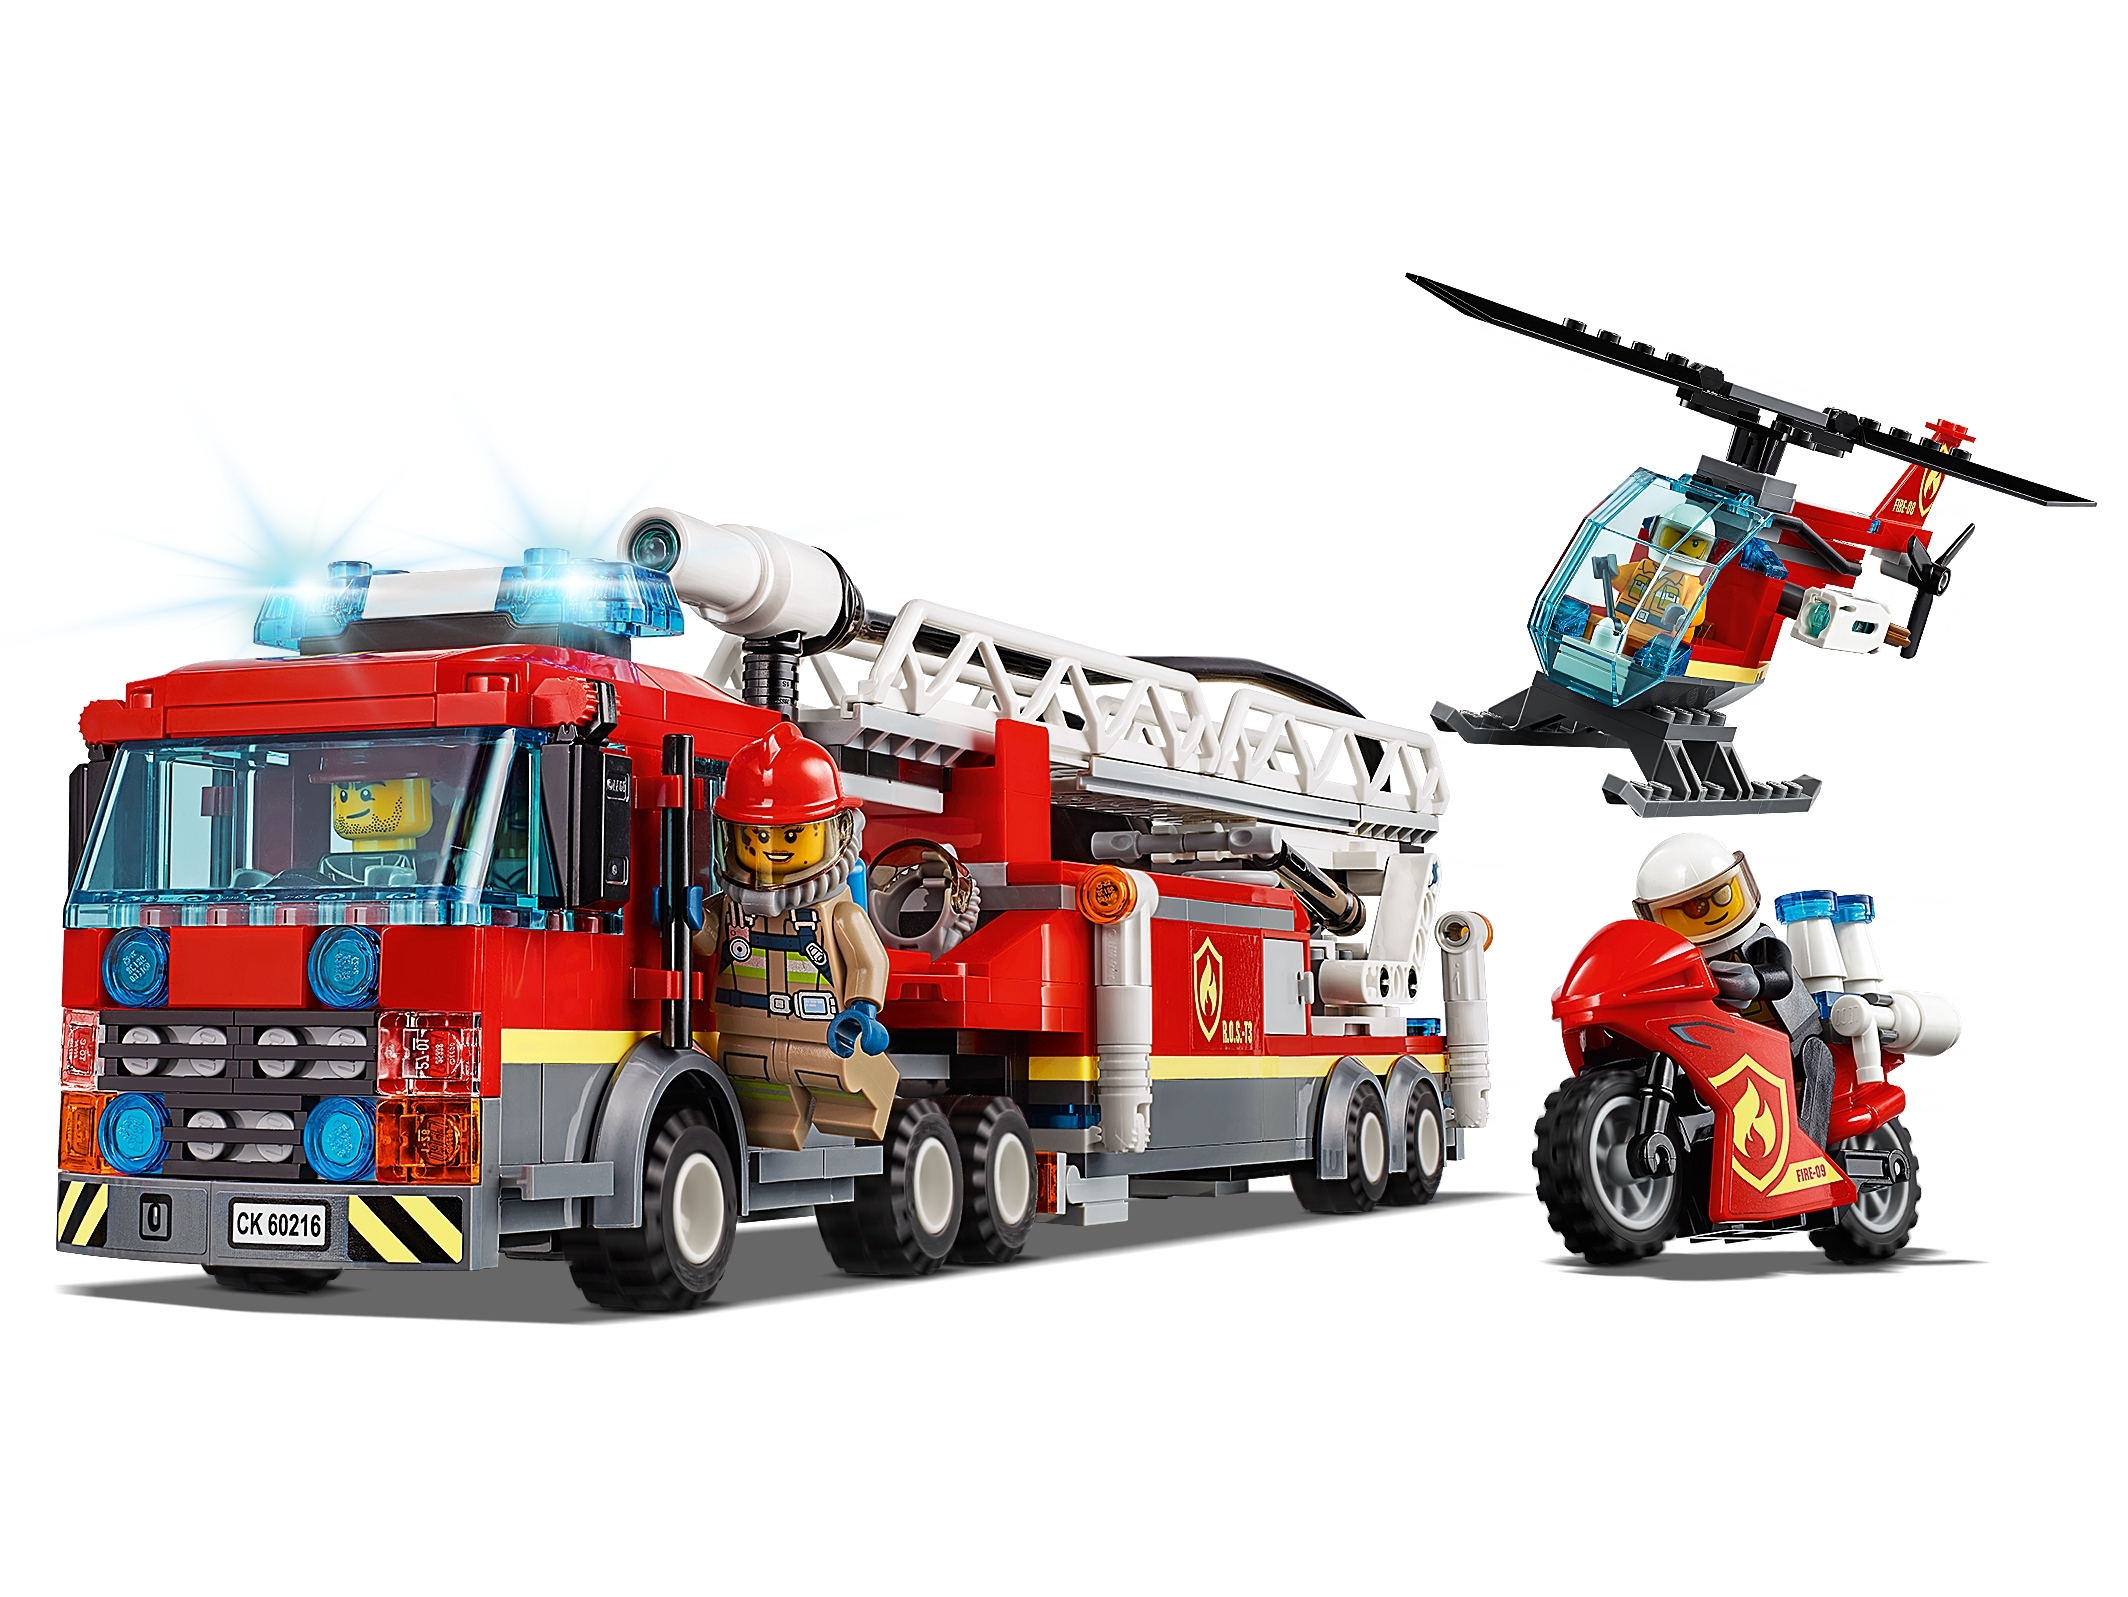 Les pompiers du centre-ville 60216, City